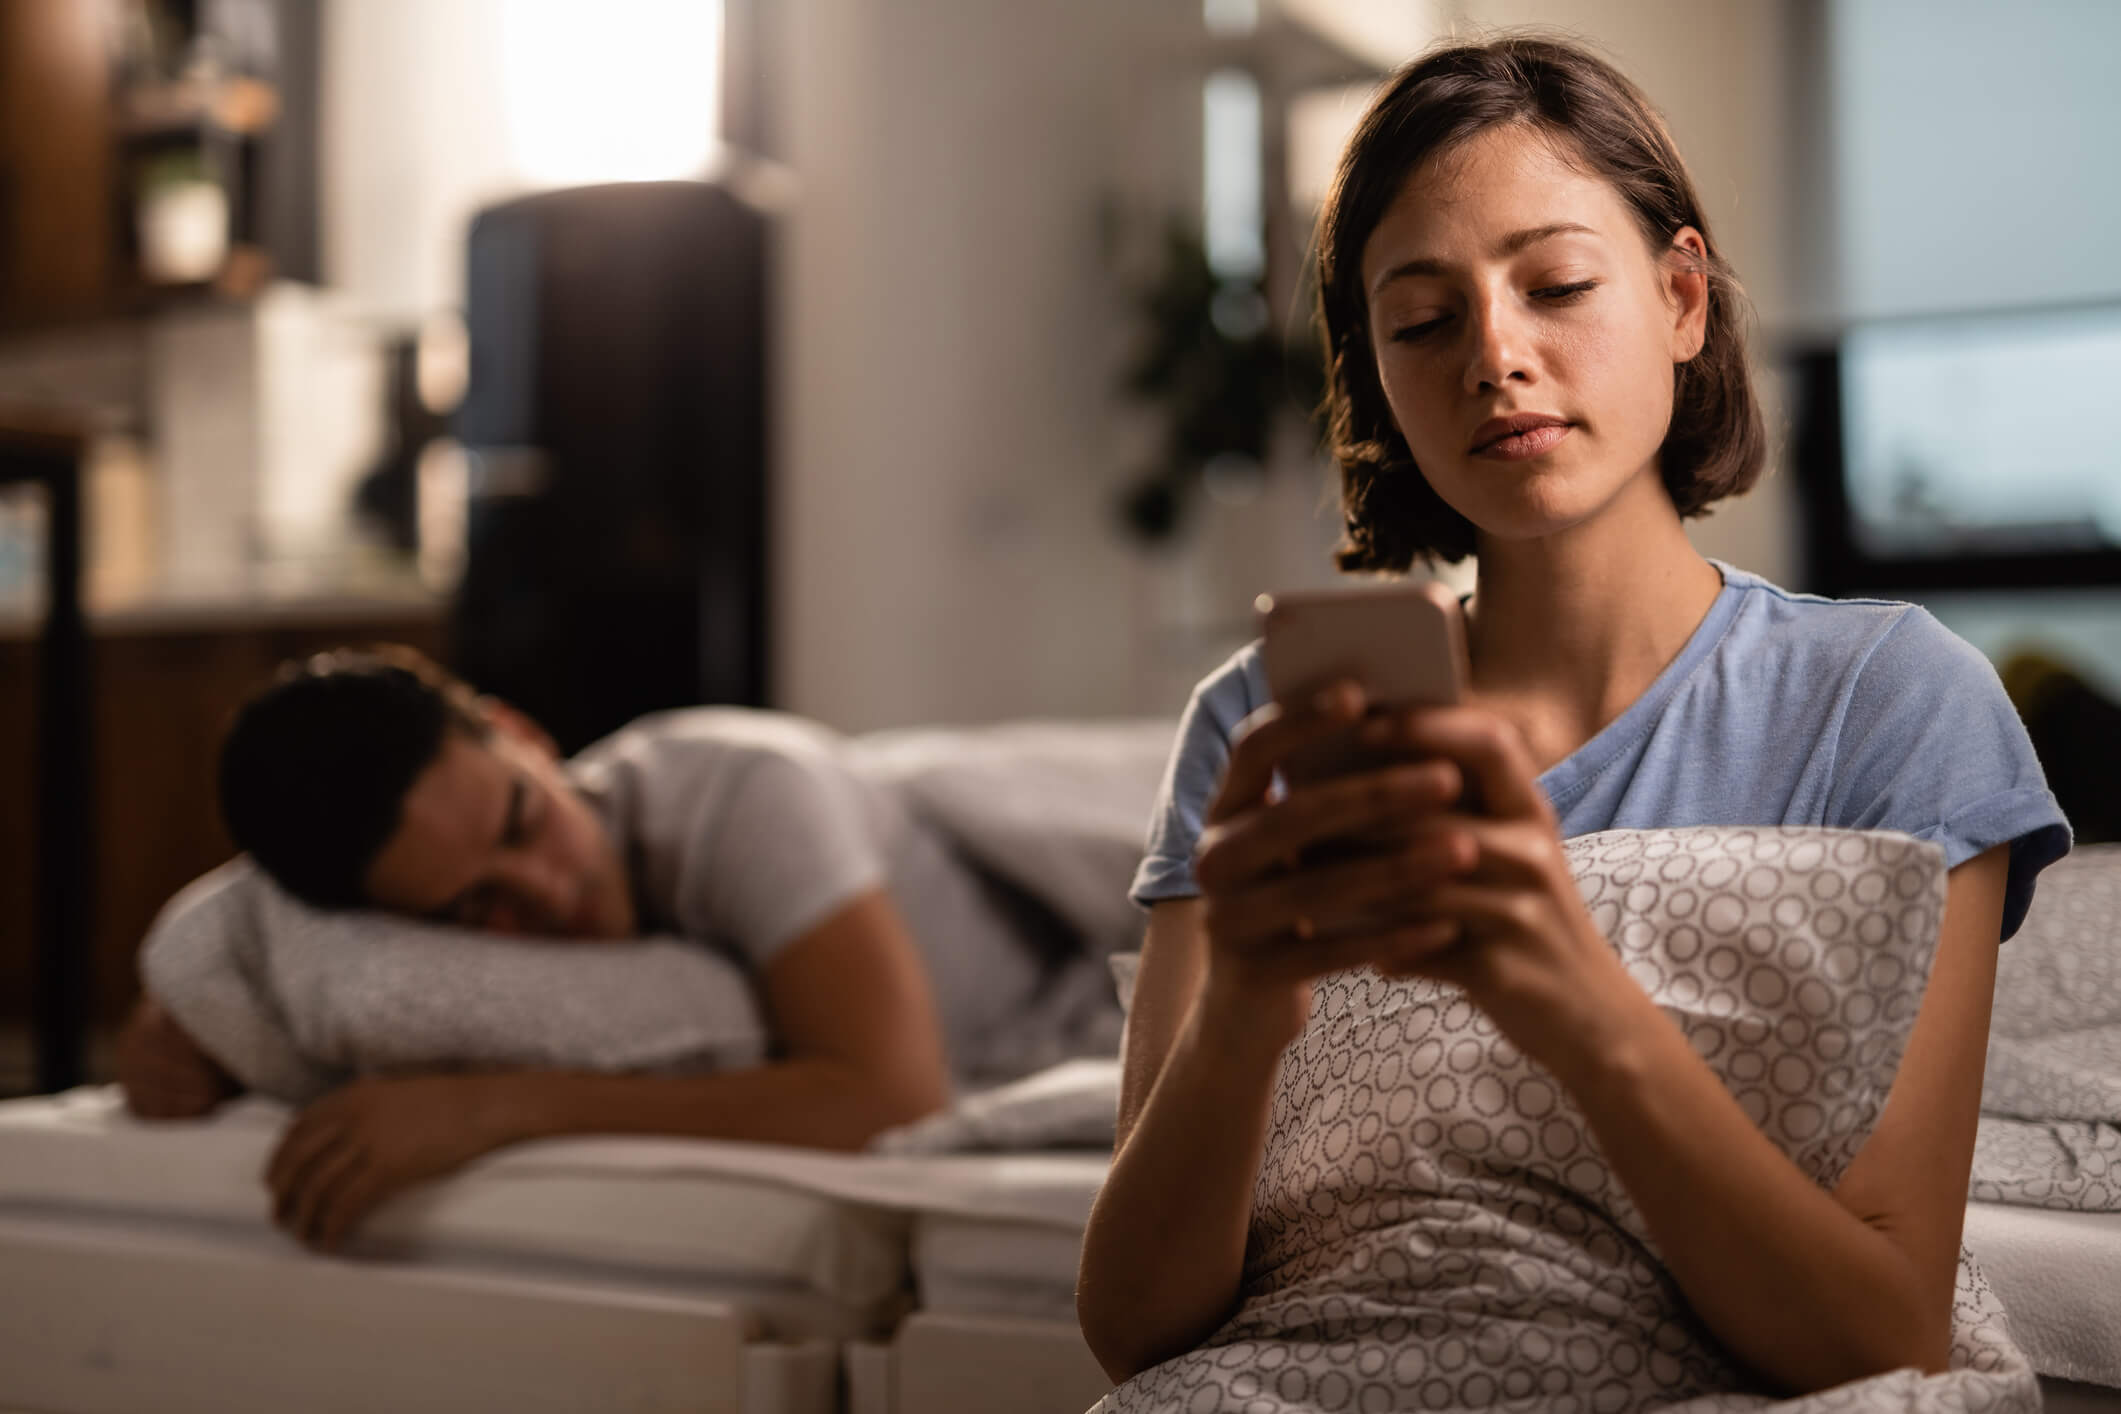 foto de homem dormindo ao fundo e mulher em primeiro plano usando o celular. imagem para representar sonhar com traição